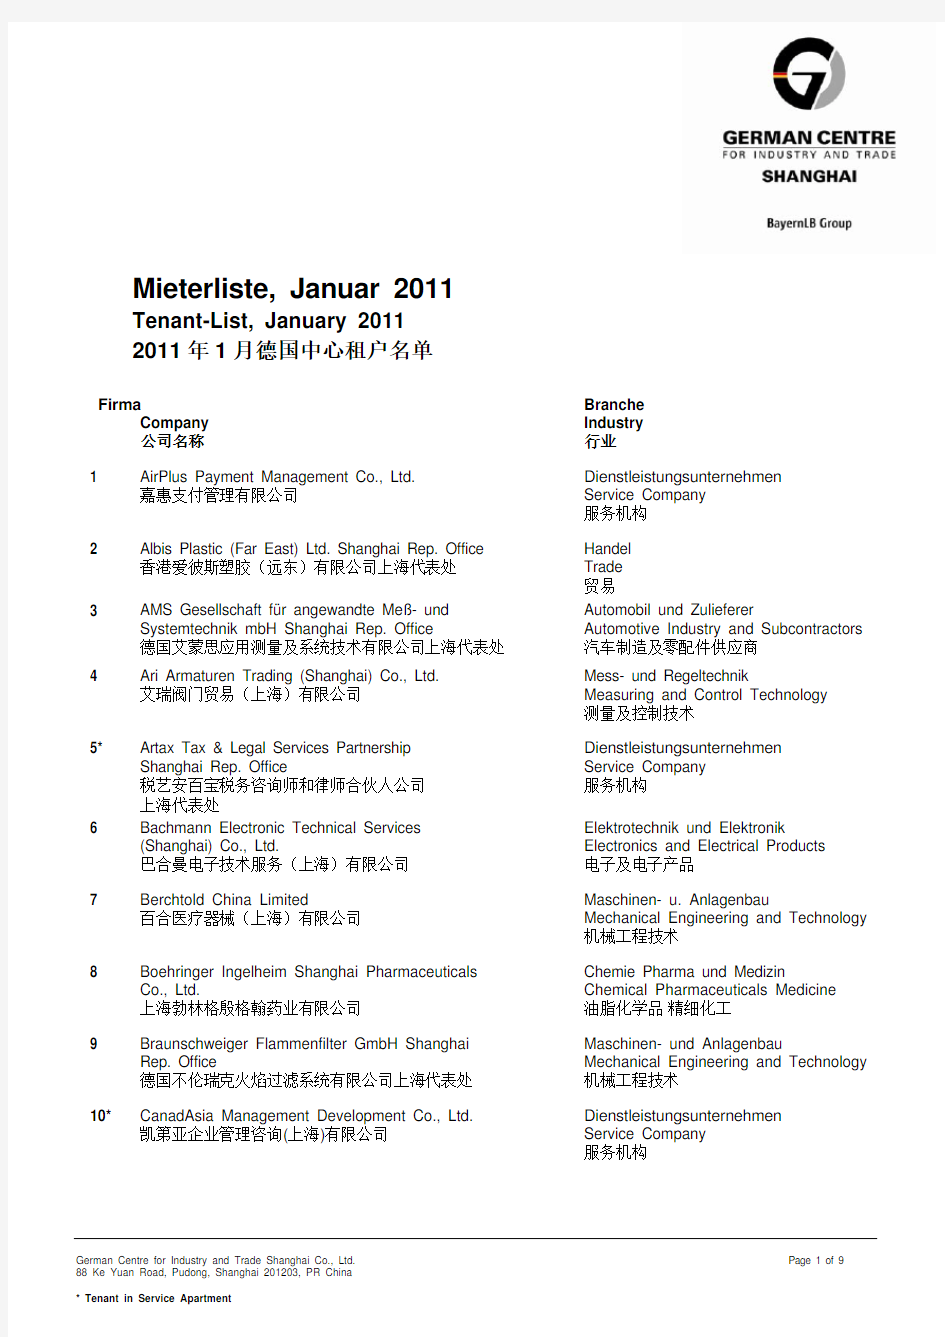 2011年1月德国中心租户名单